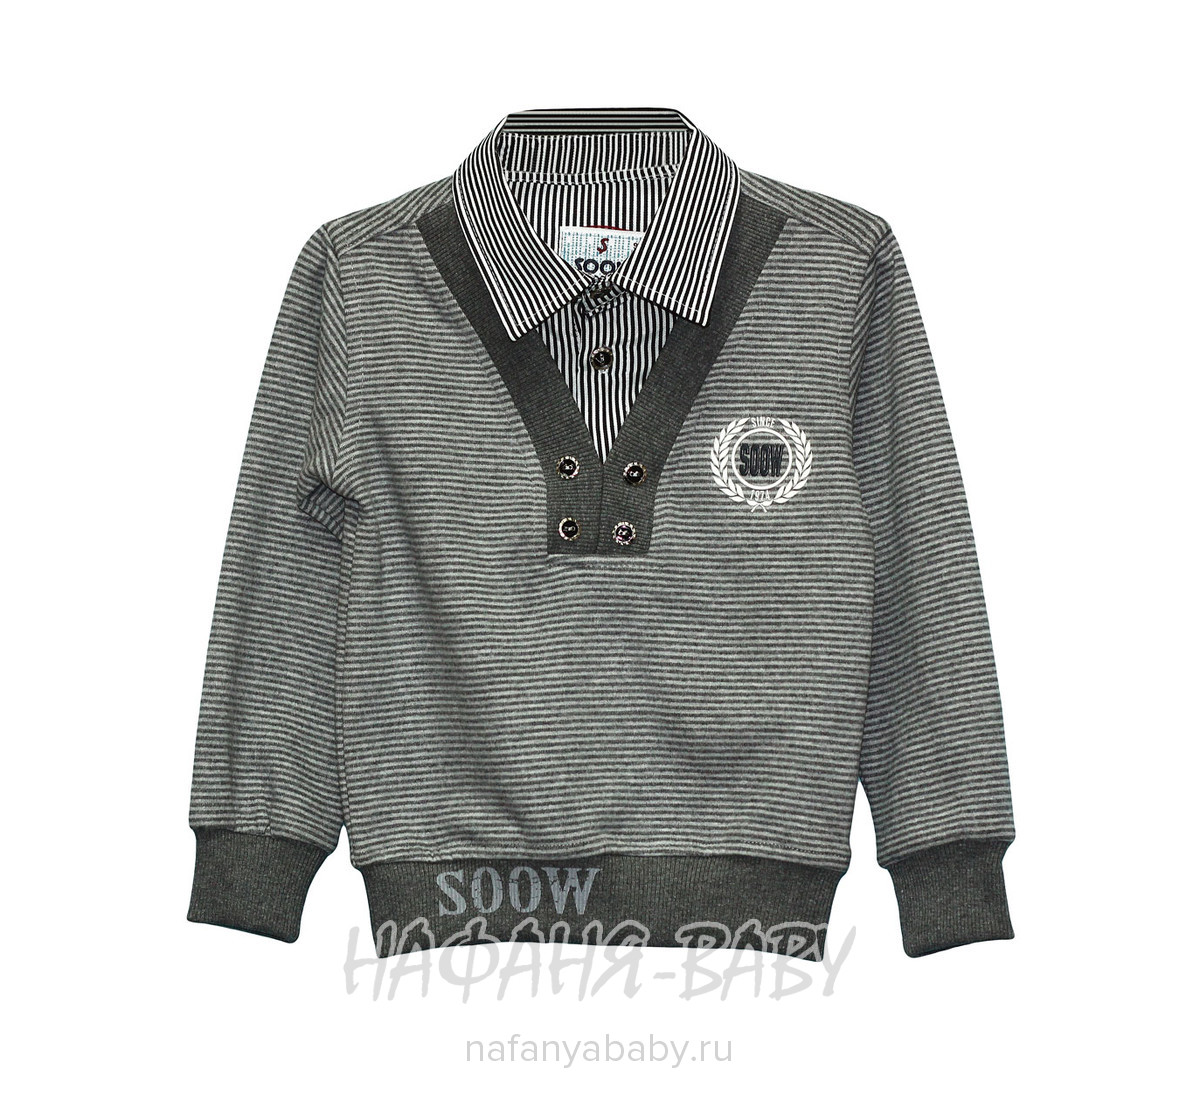 Детская рубашка-джемпер SOOW, купить в интернет магазине Нафаня. арт: 5133.